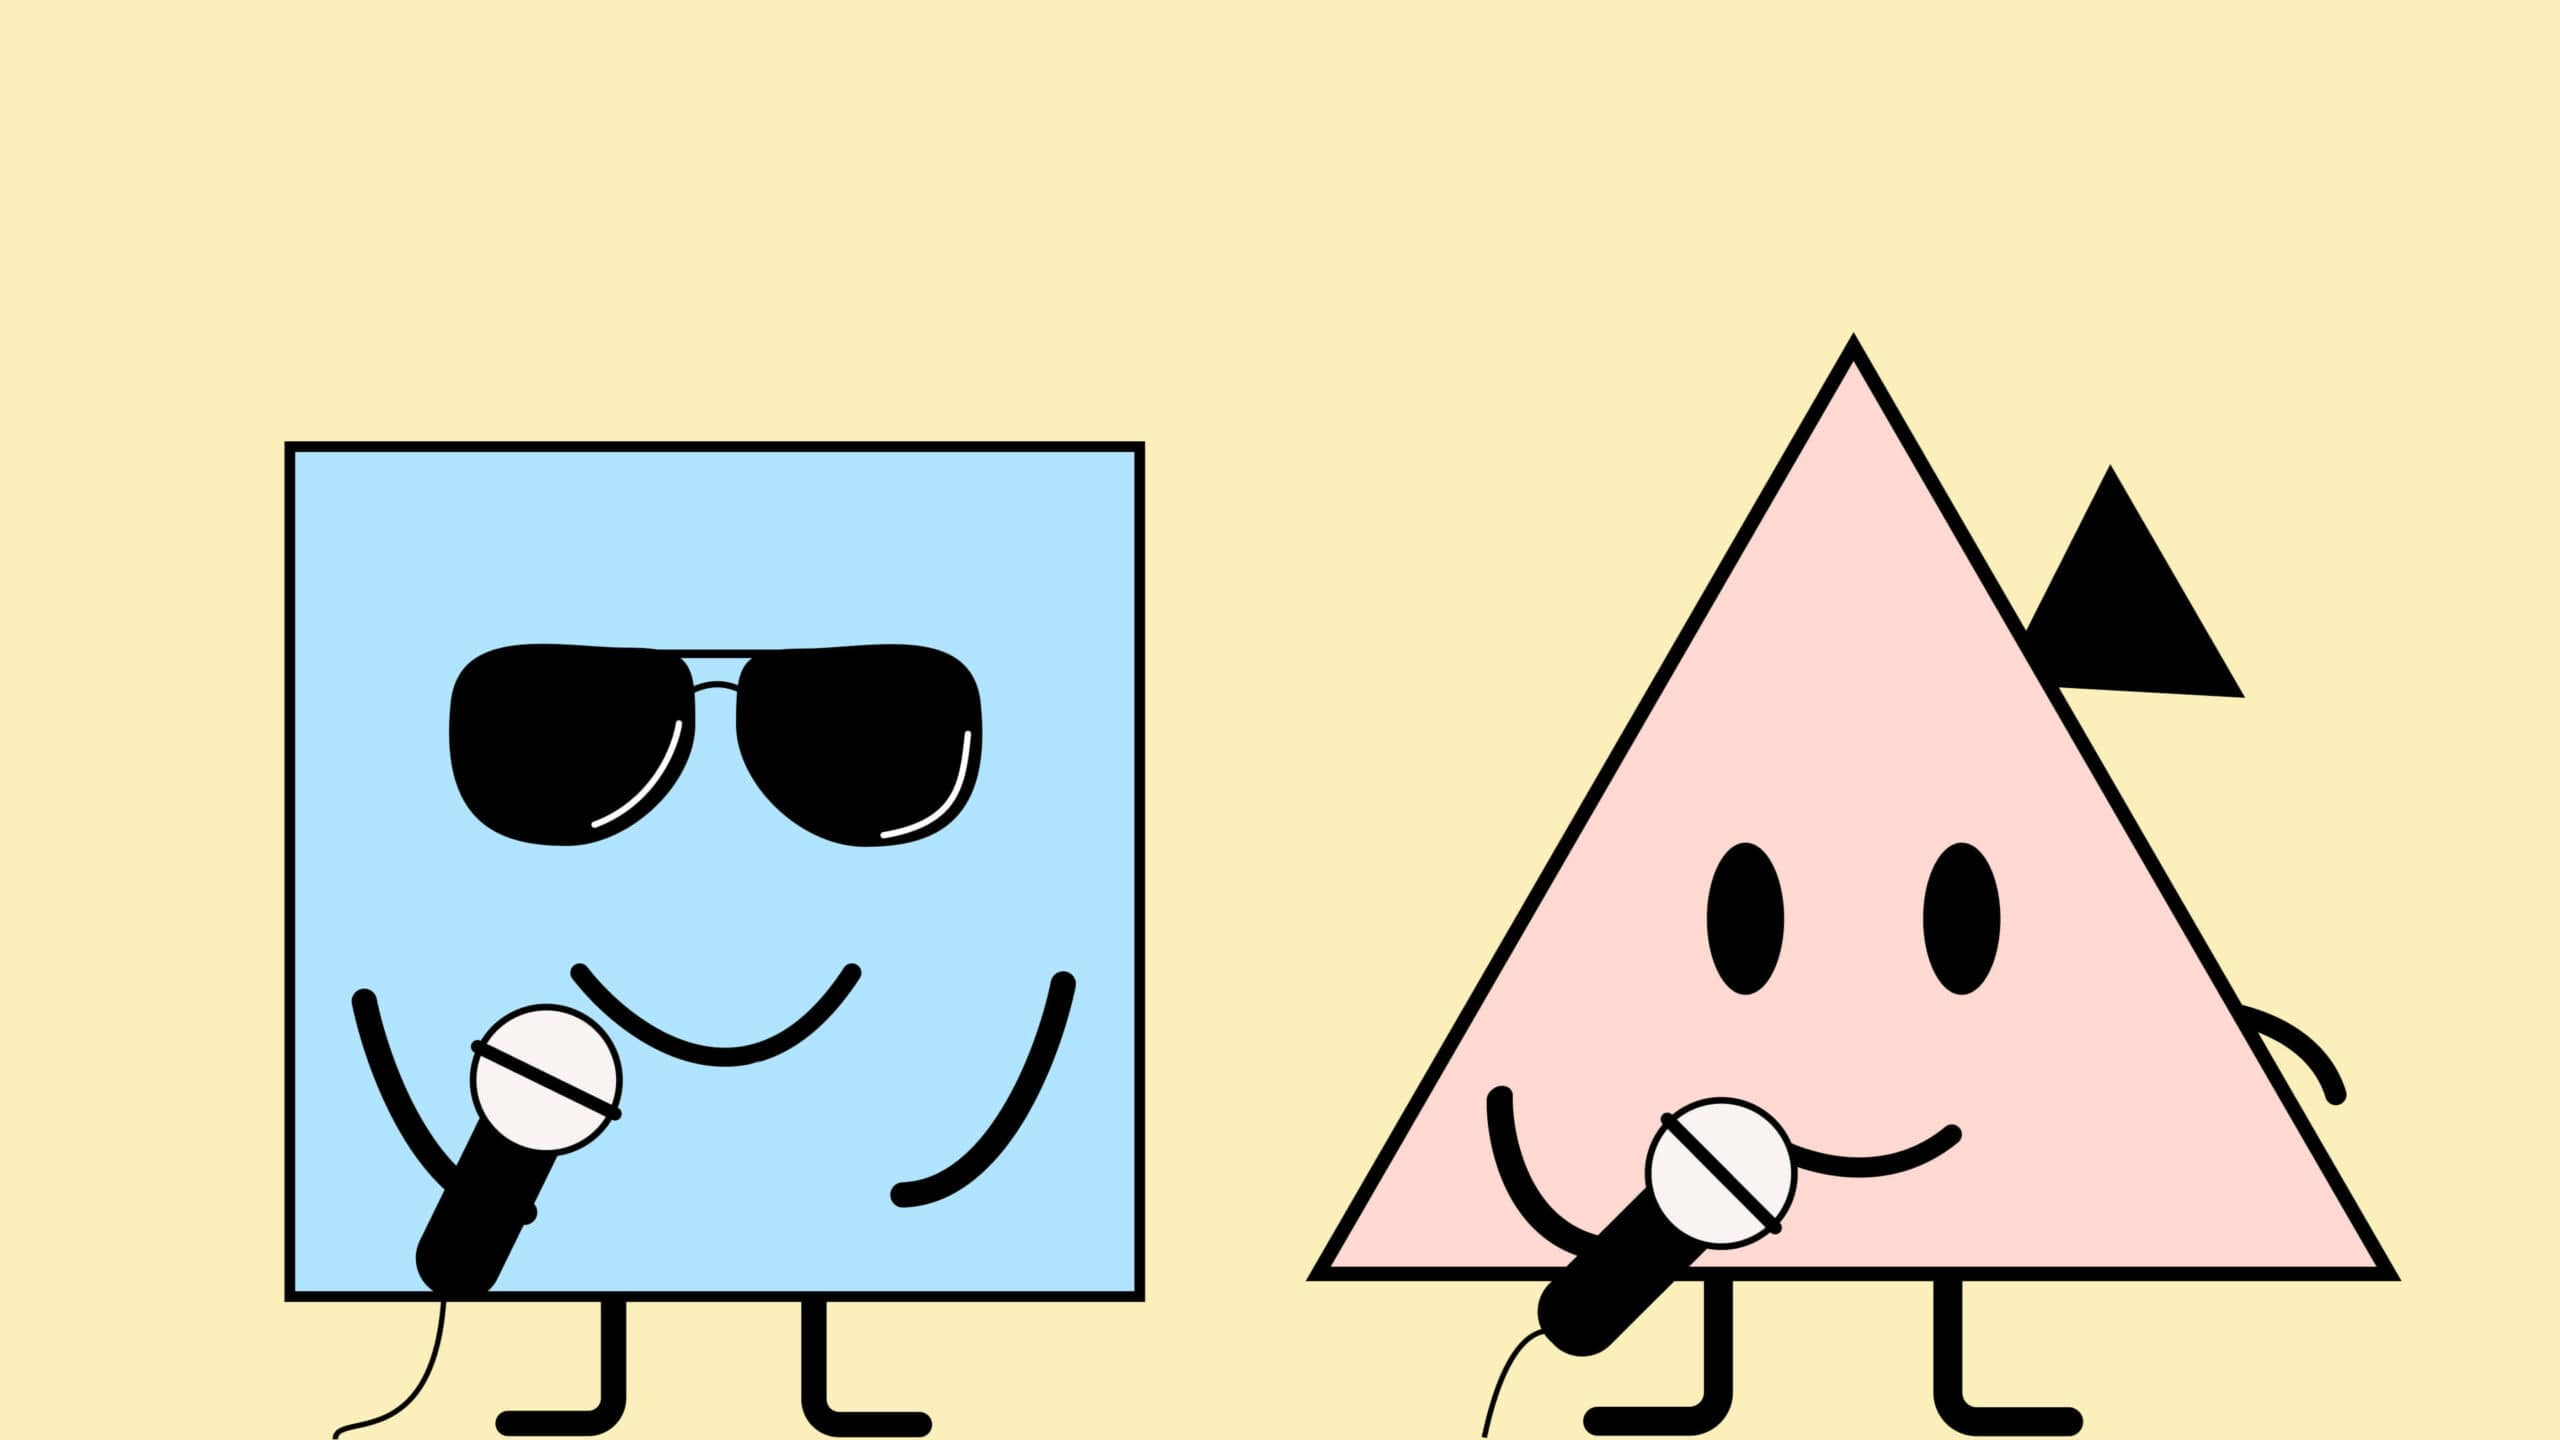 Zwei illustrierte Figuren, die Redner darstellen. Ein blaues Viereck mit Sonnenbrille und einem Mikrofon in der Hand. Ein rotes Dreieck mit einem Hörgerät und einem Mikrofon in der Hand.